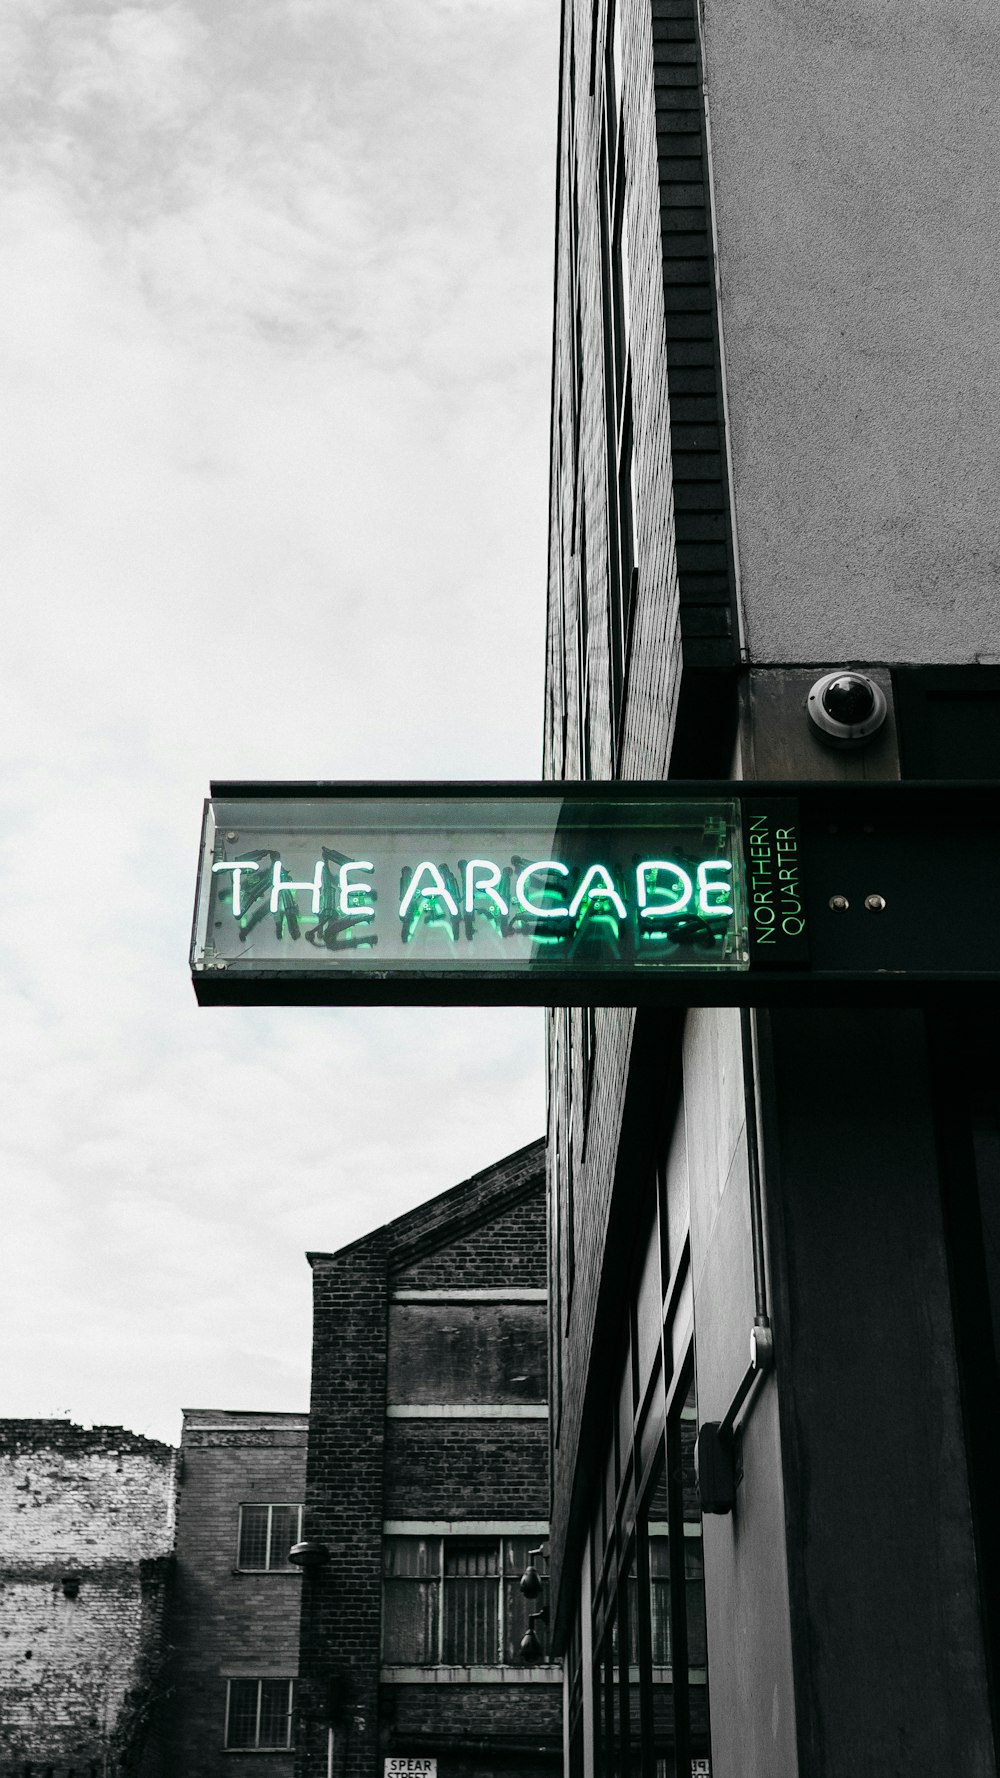 La segnaletica dell'Arcade